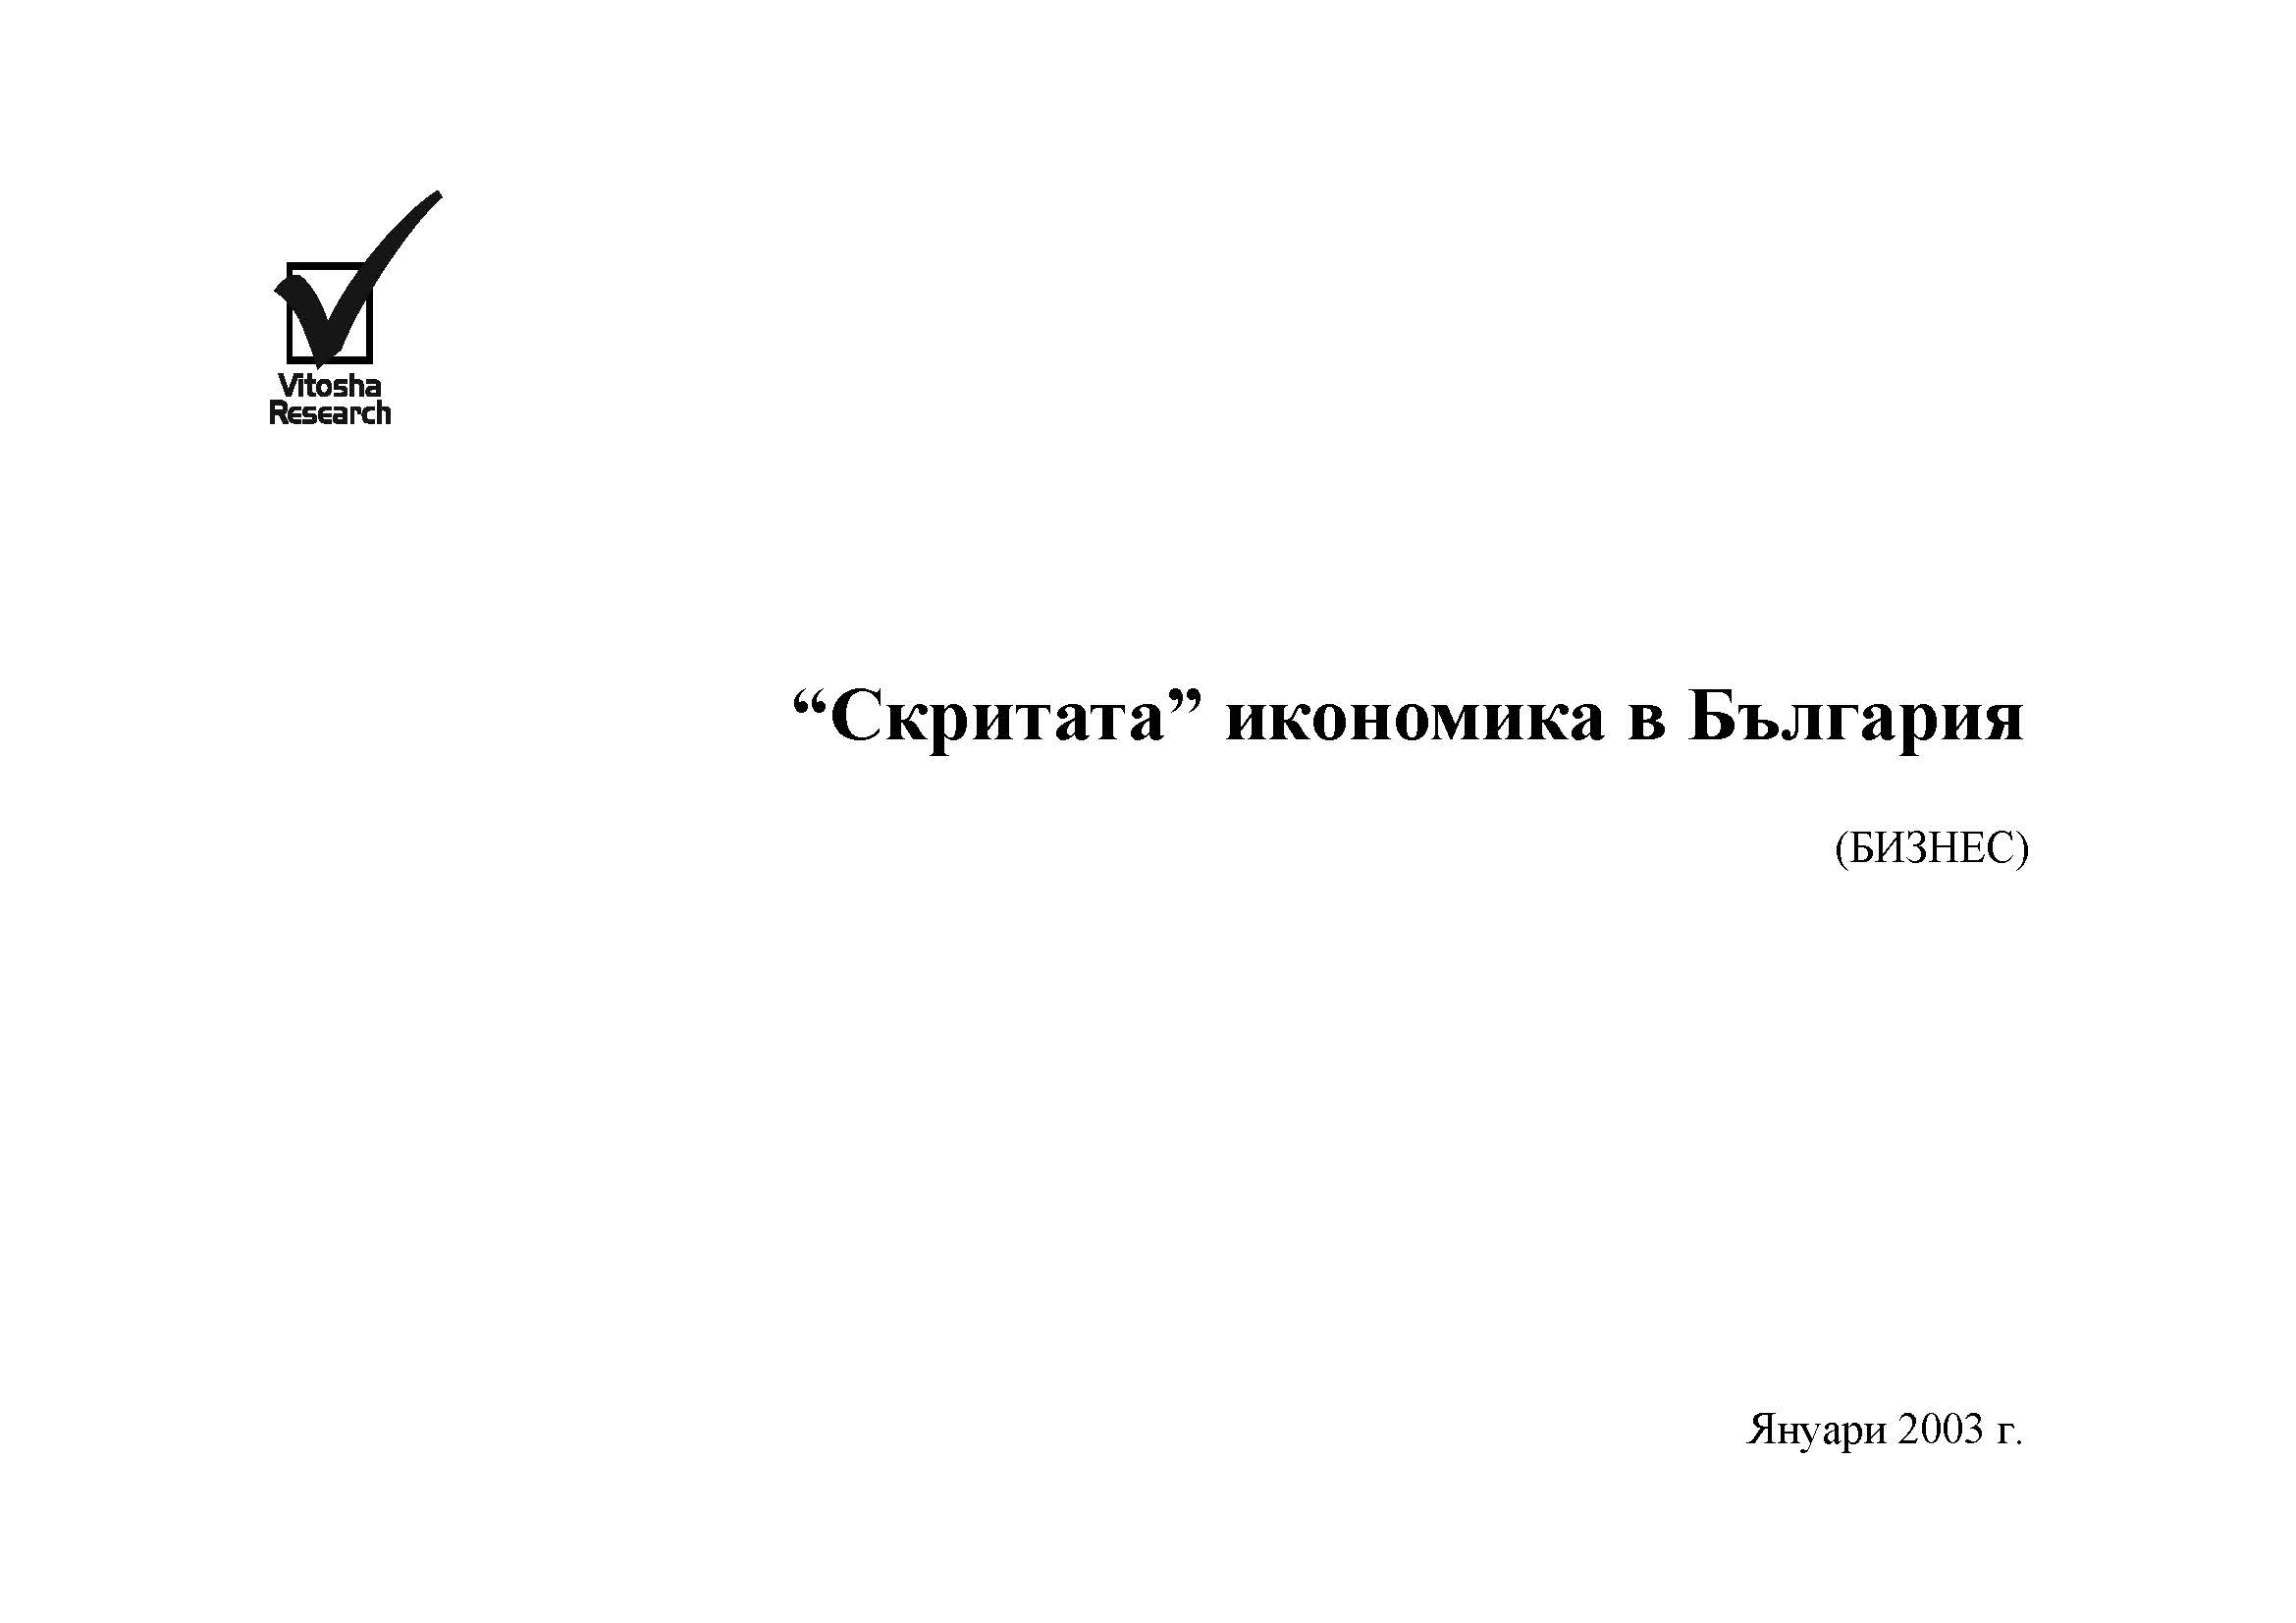 Скритата икономика в България (изследване на бизнес-сектора), Декември 2002 г.